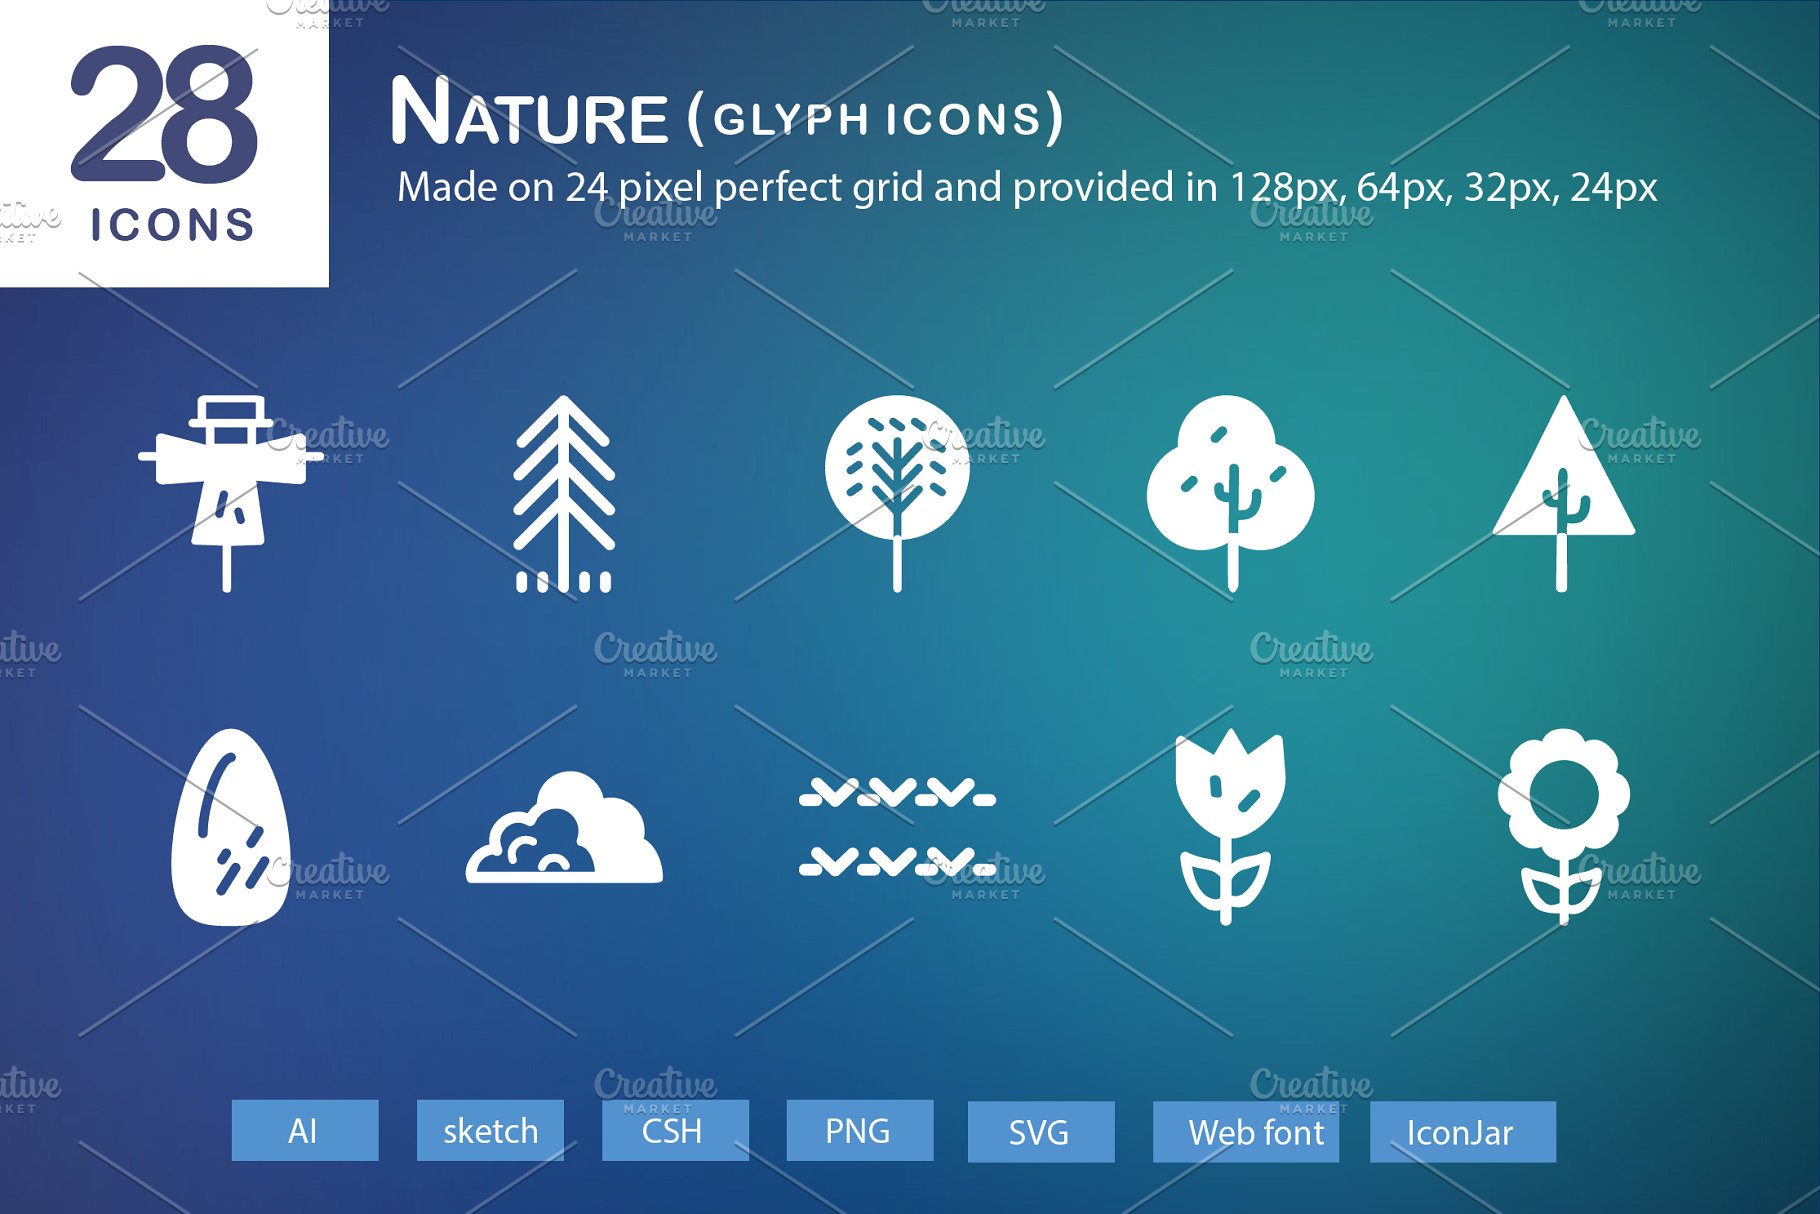 28个大自然元素字体亿图网易图库精选图标 28 Nature Glyph Icons插图